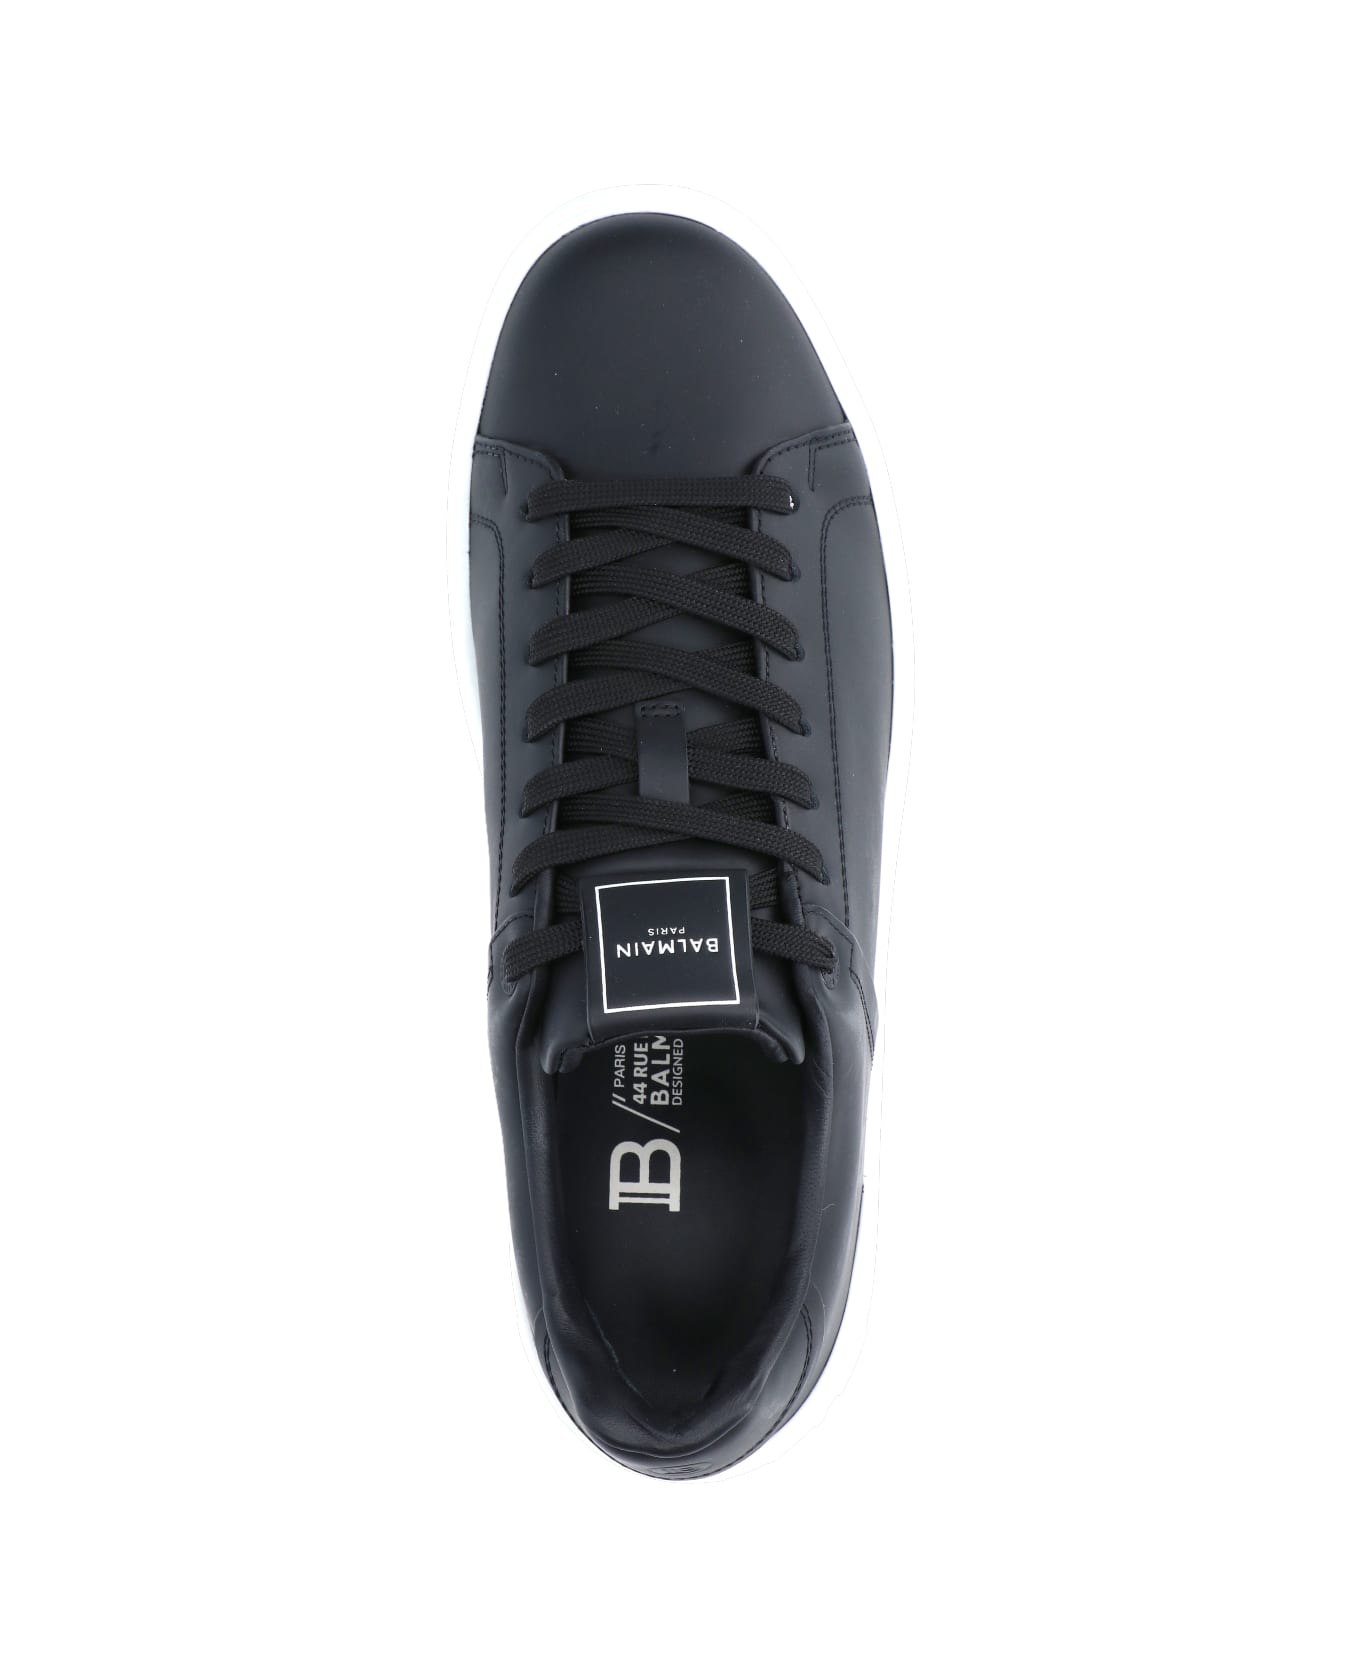 Balmain "low" Sneakers - Black   スニーカー